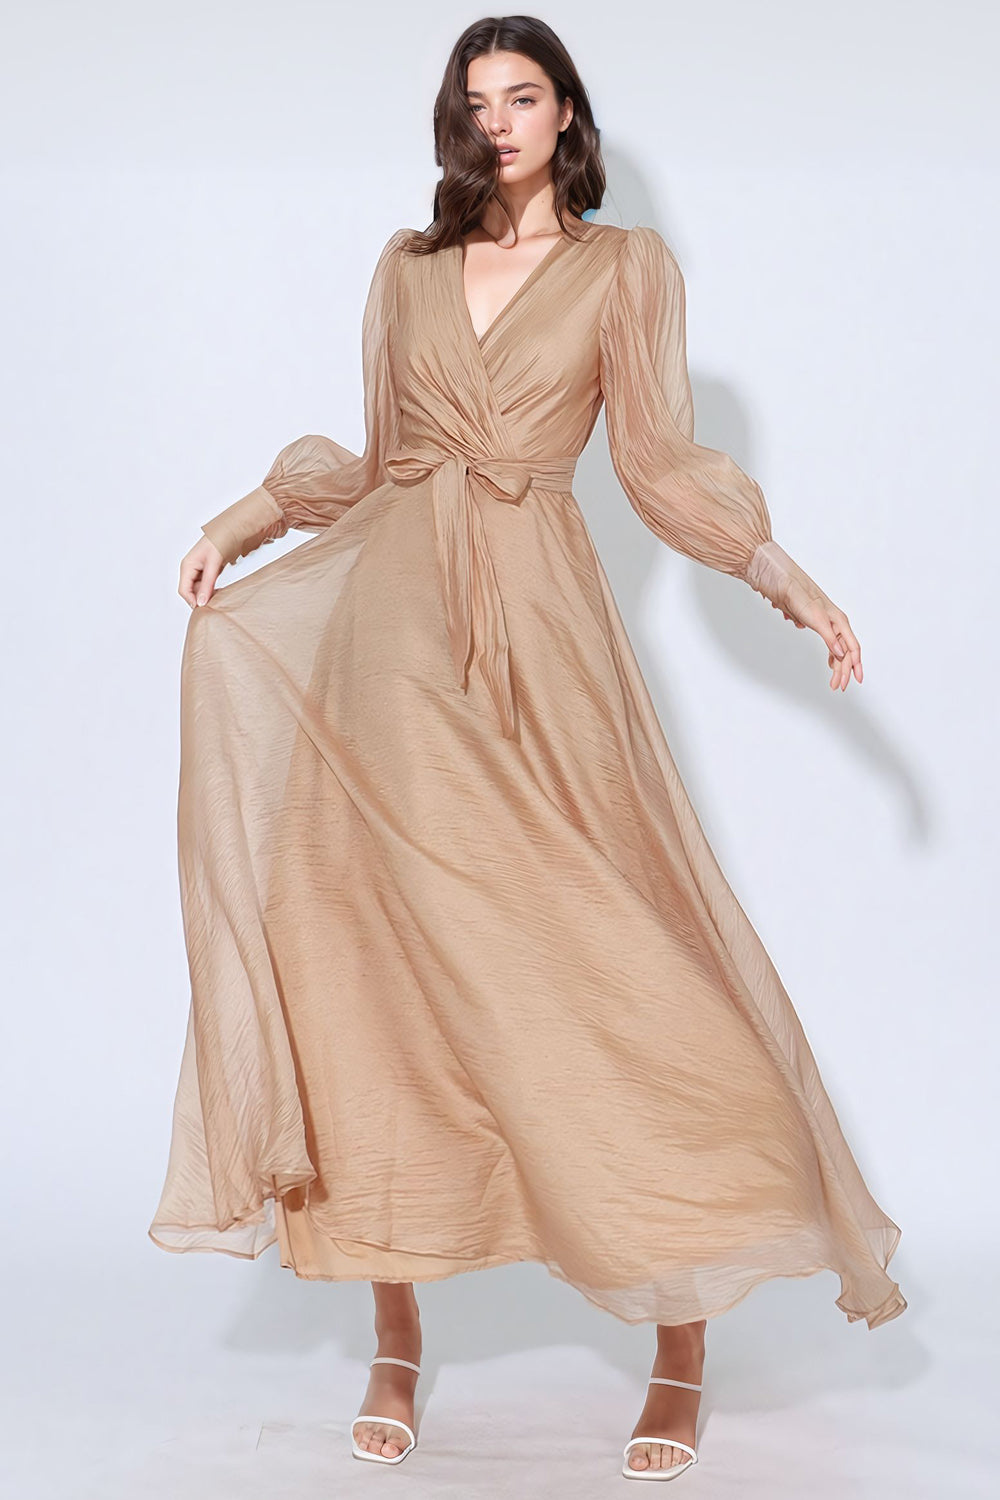 Siateczkowa sukienka maxi z dekoltem w szpic - beżowa